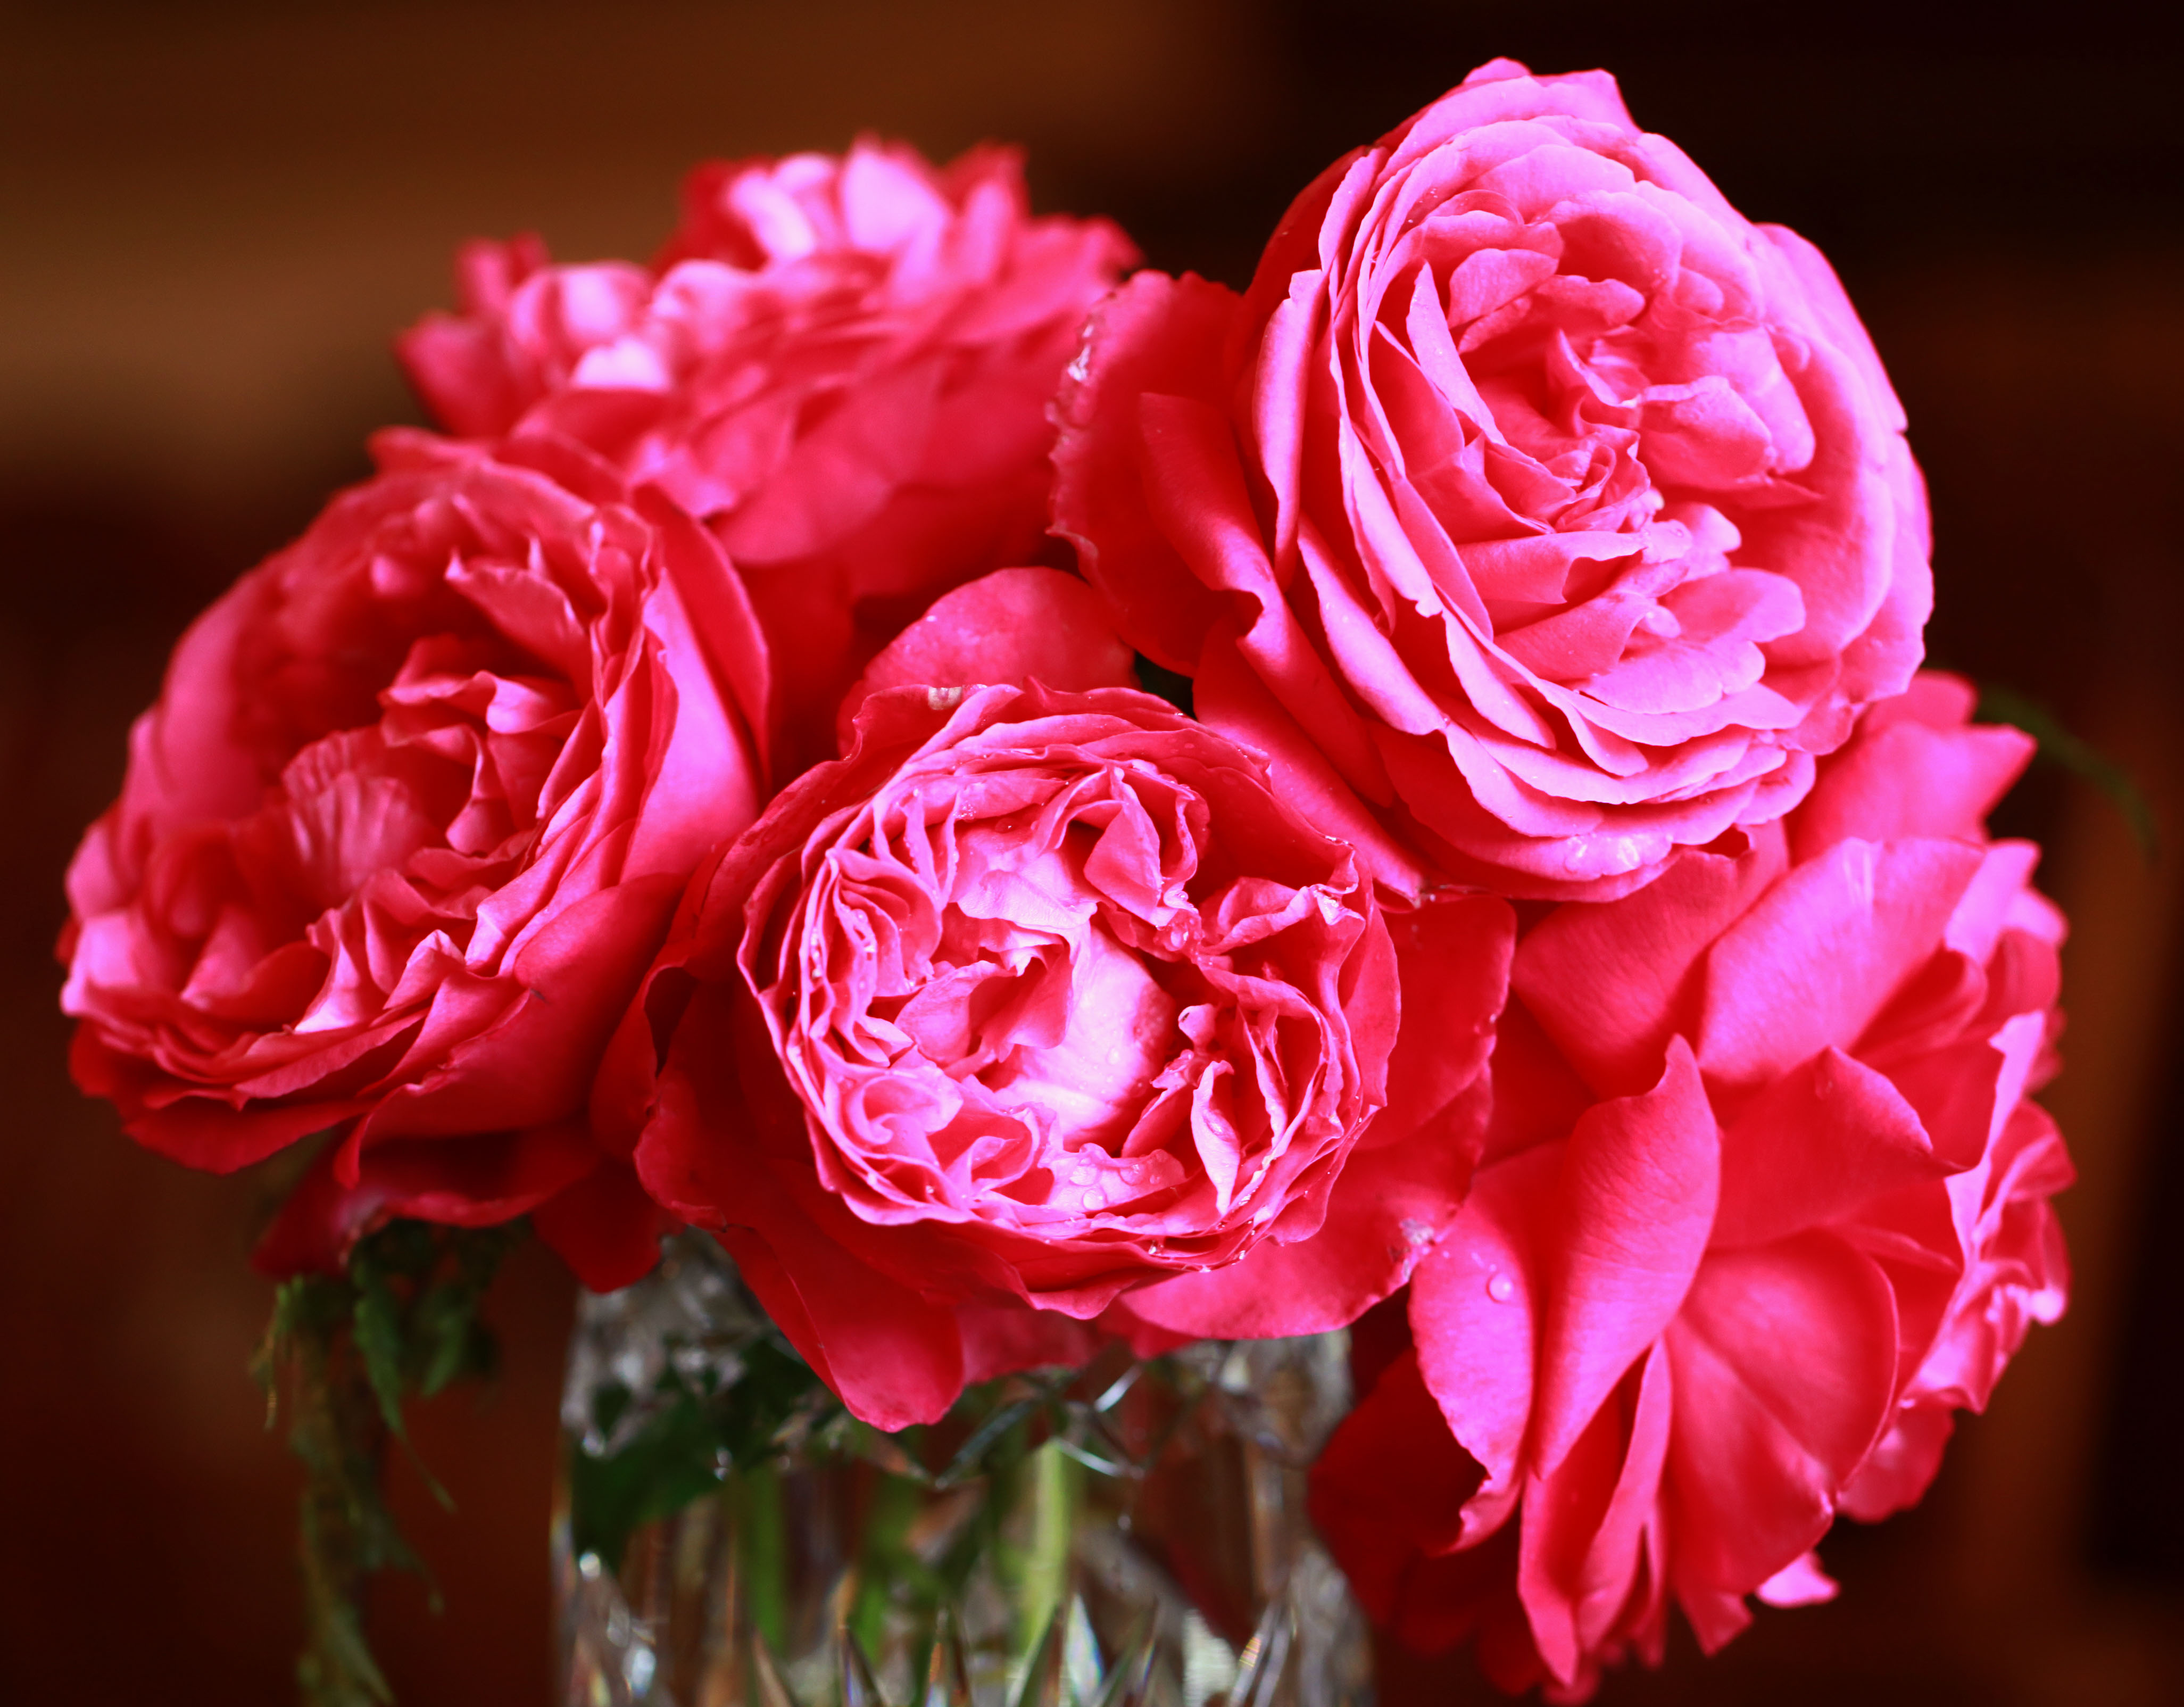 Rose romance